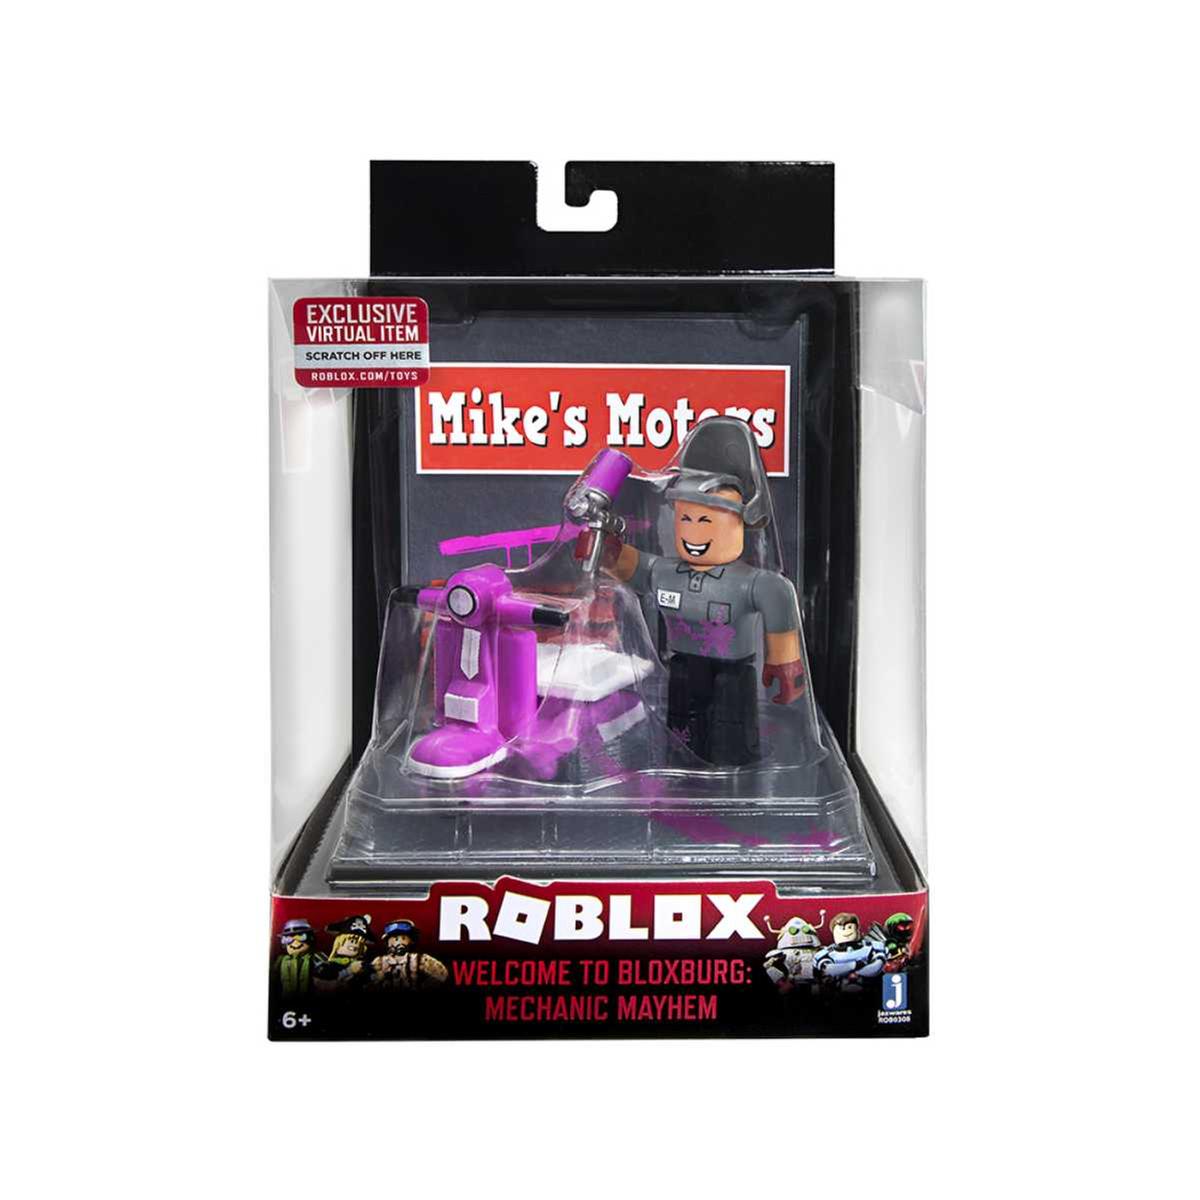 Roblox - Welcome to Bloxburg: Mechanic Maythem, ROBLOX